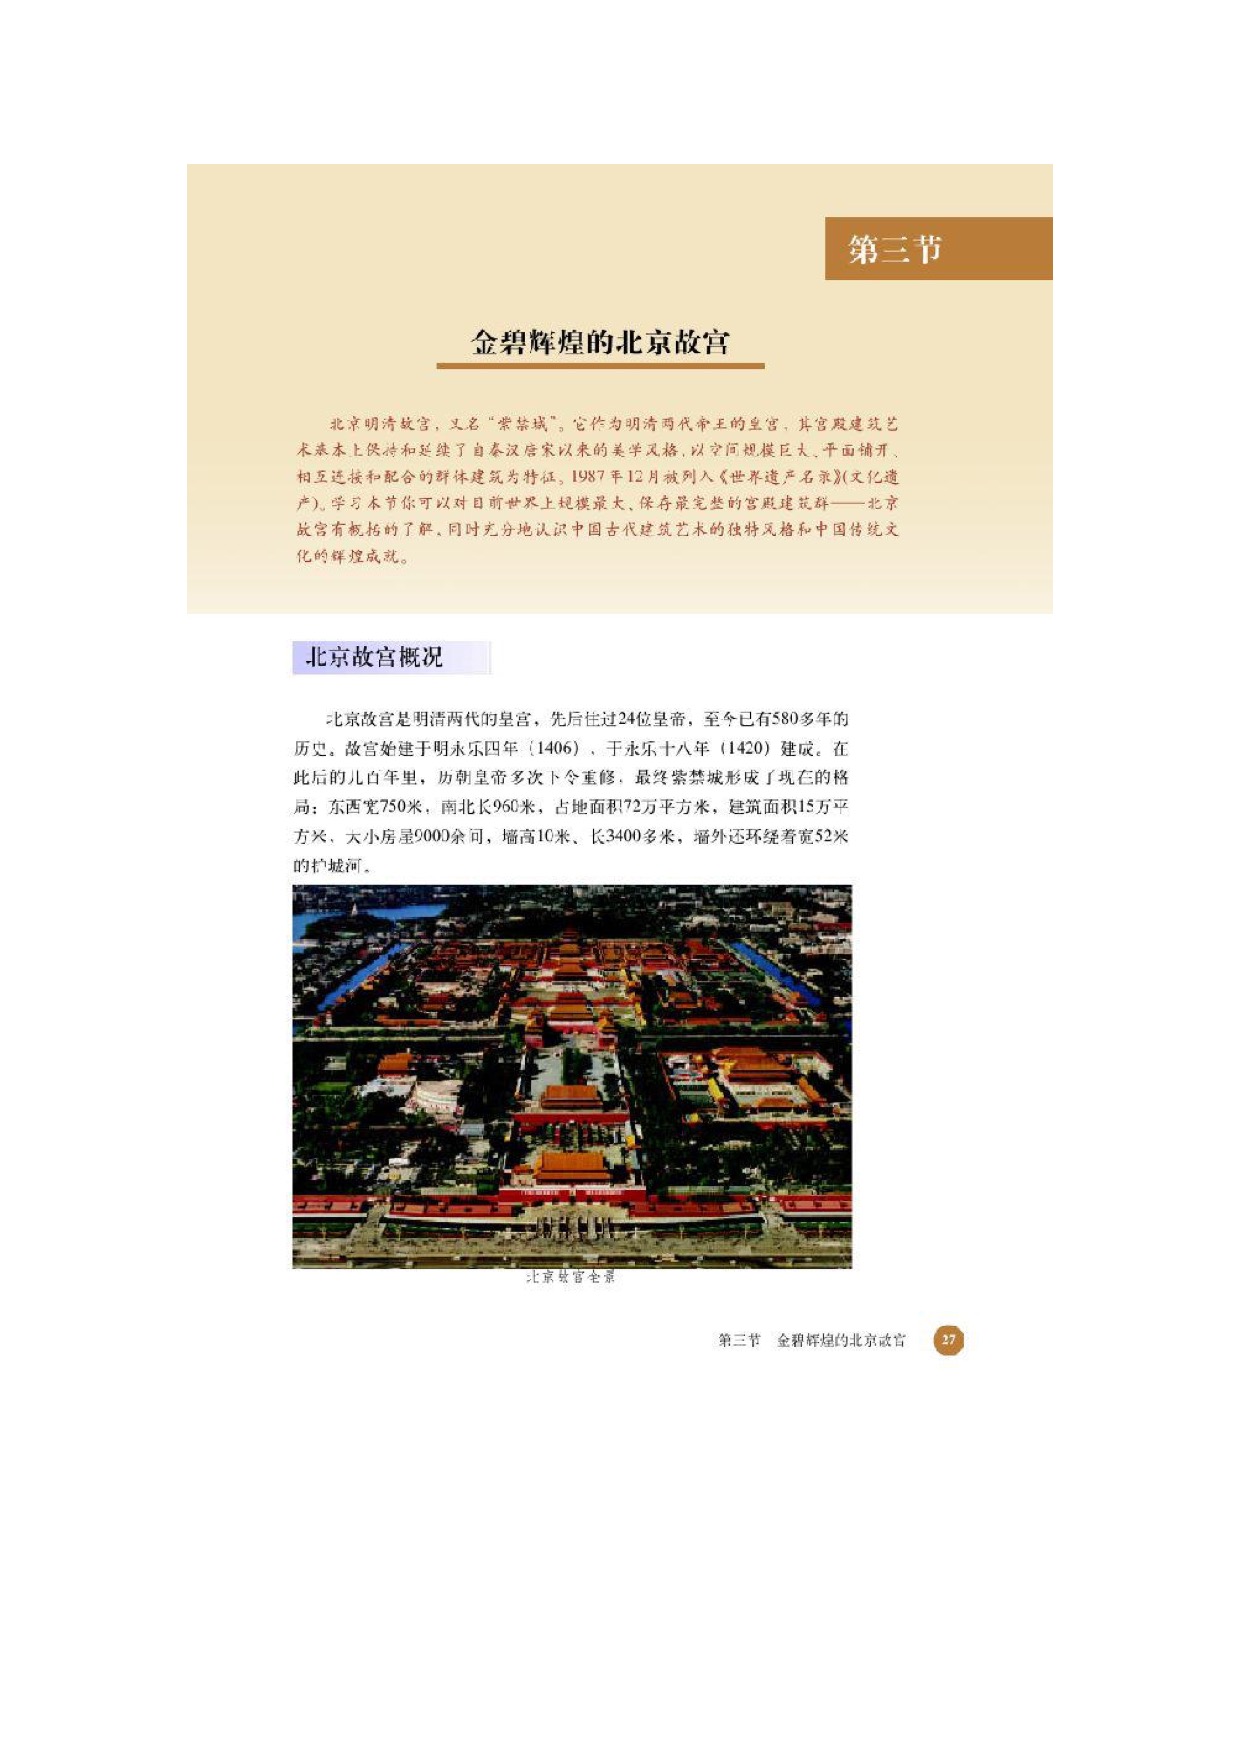 第三节金壁辉煌的北京故宫